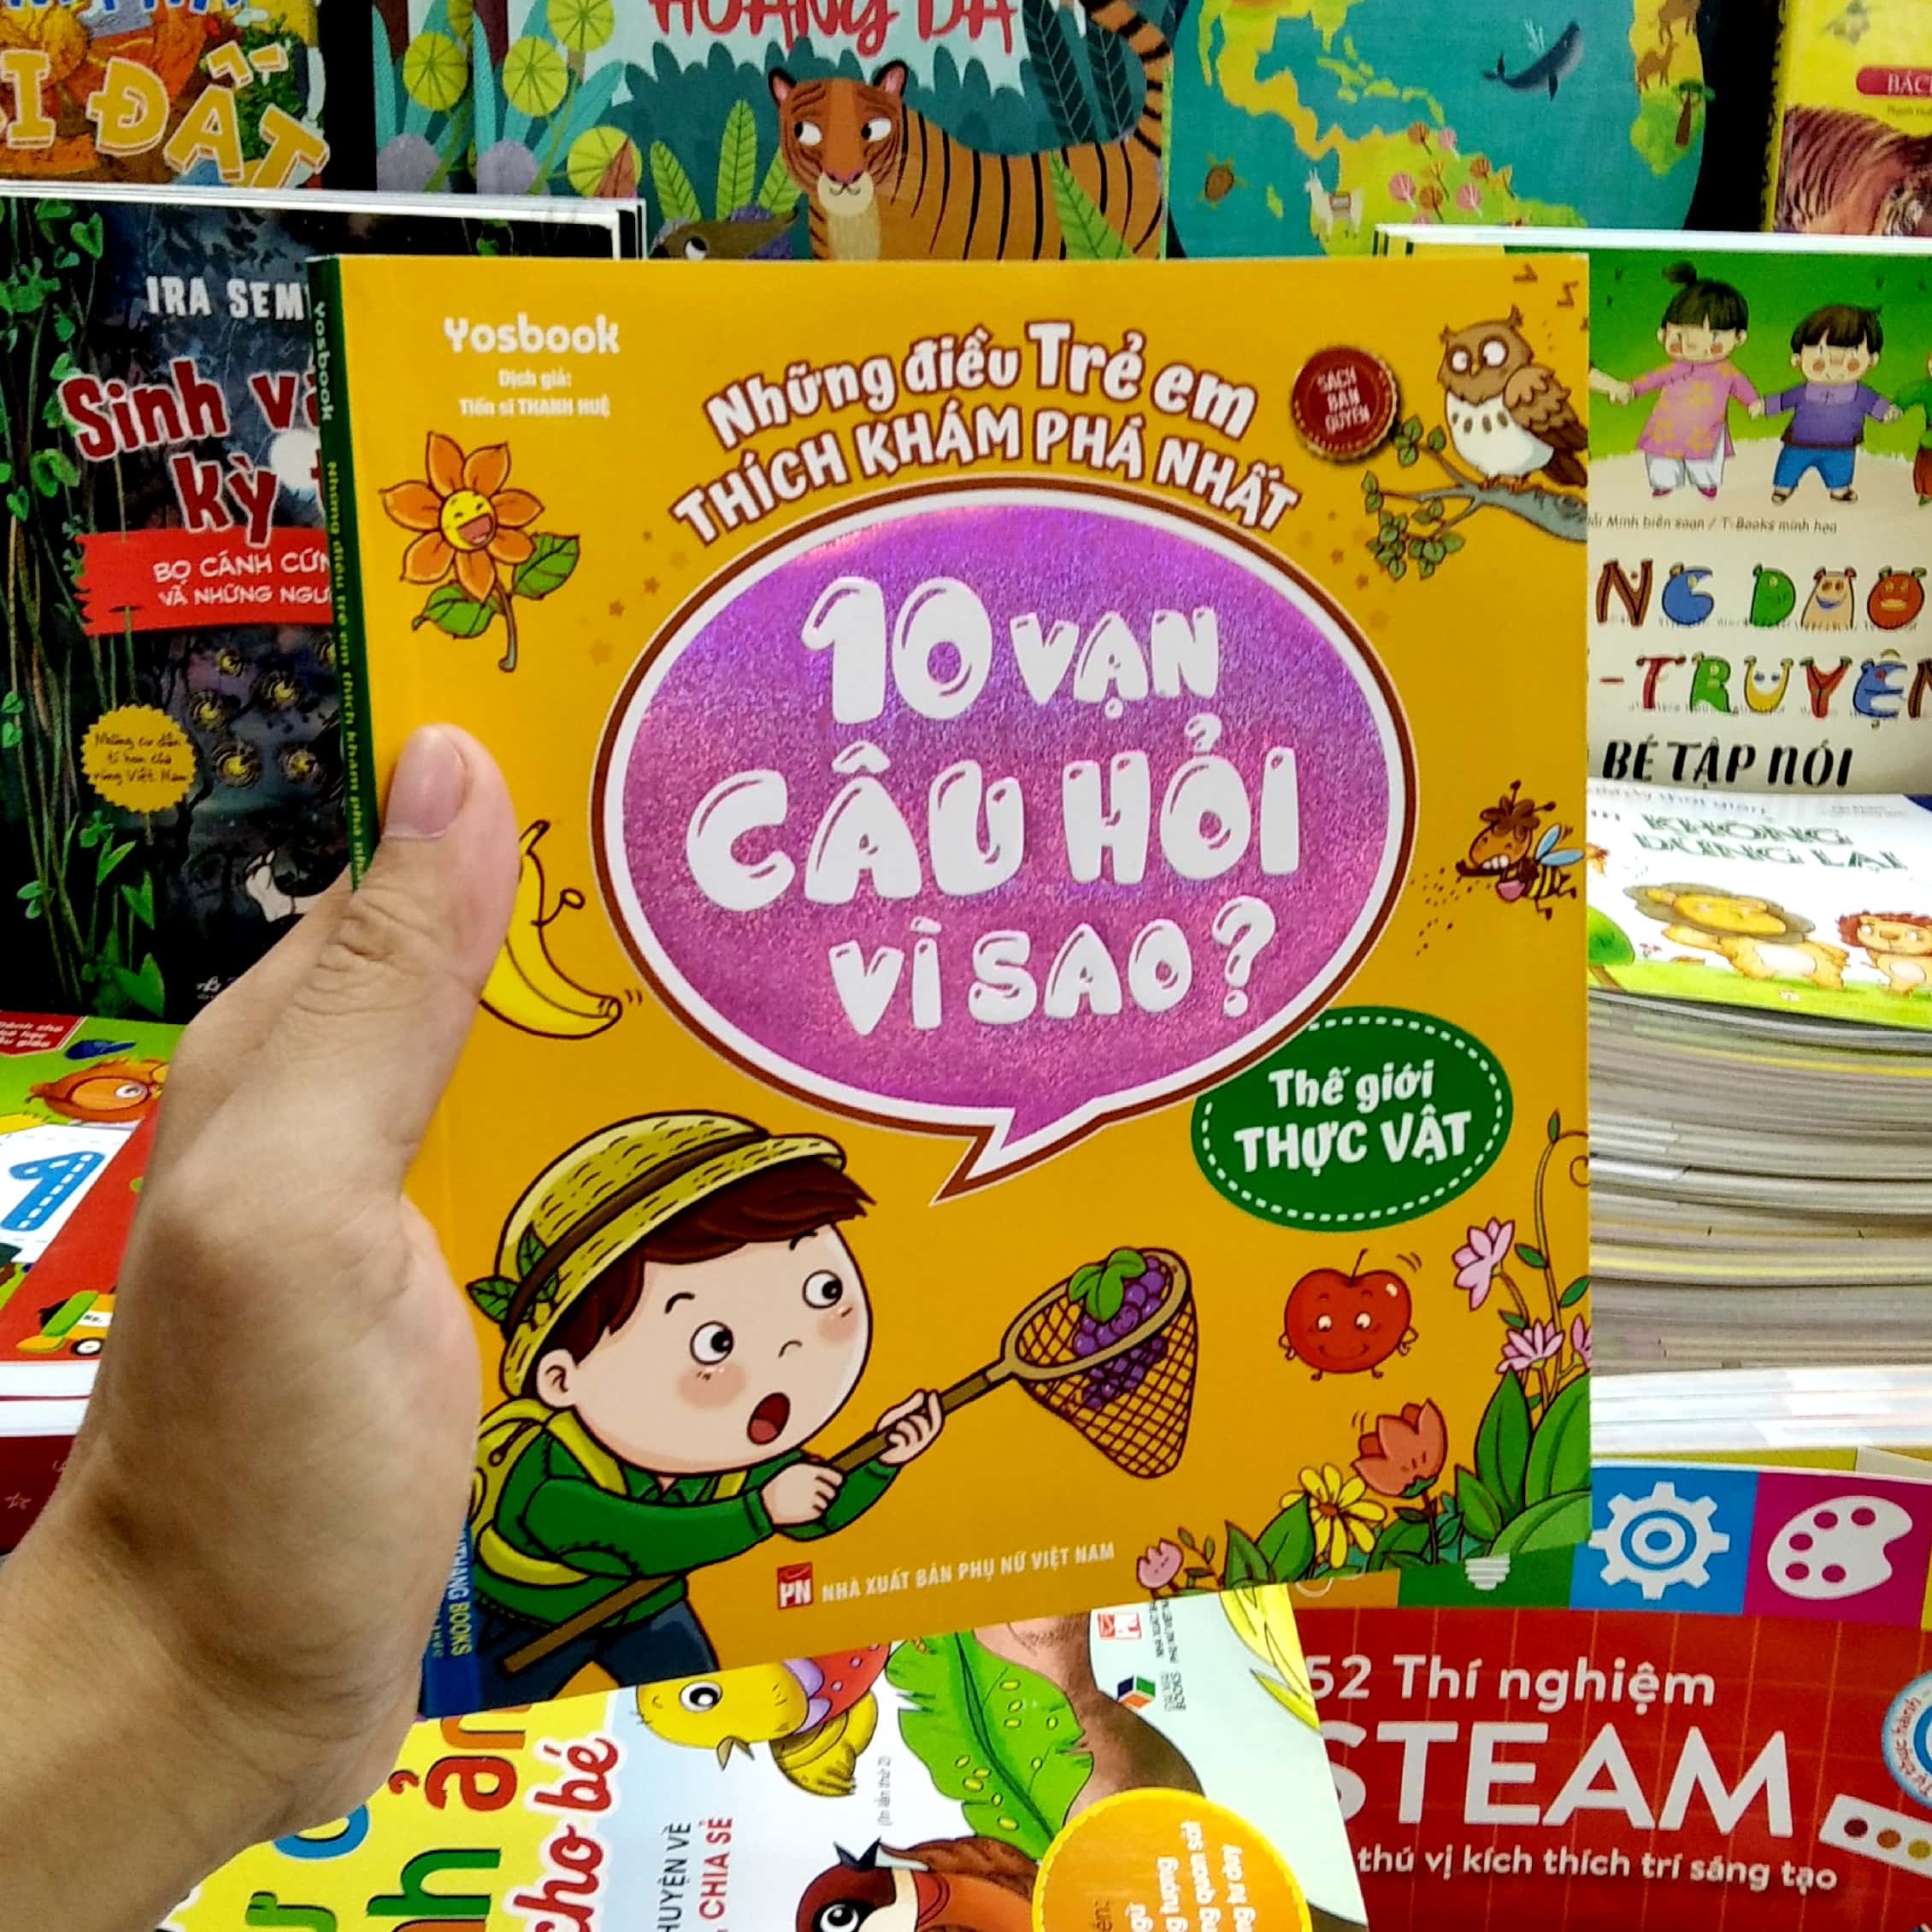 Những điều trẻ em thích khám phá nhất - 10 vạn câu hỏi vì sao ? - Thế giới thực vật (sách bản quyền) - tái bản